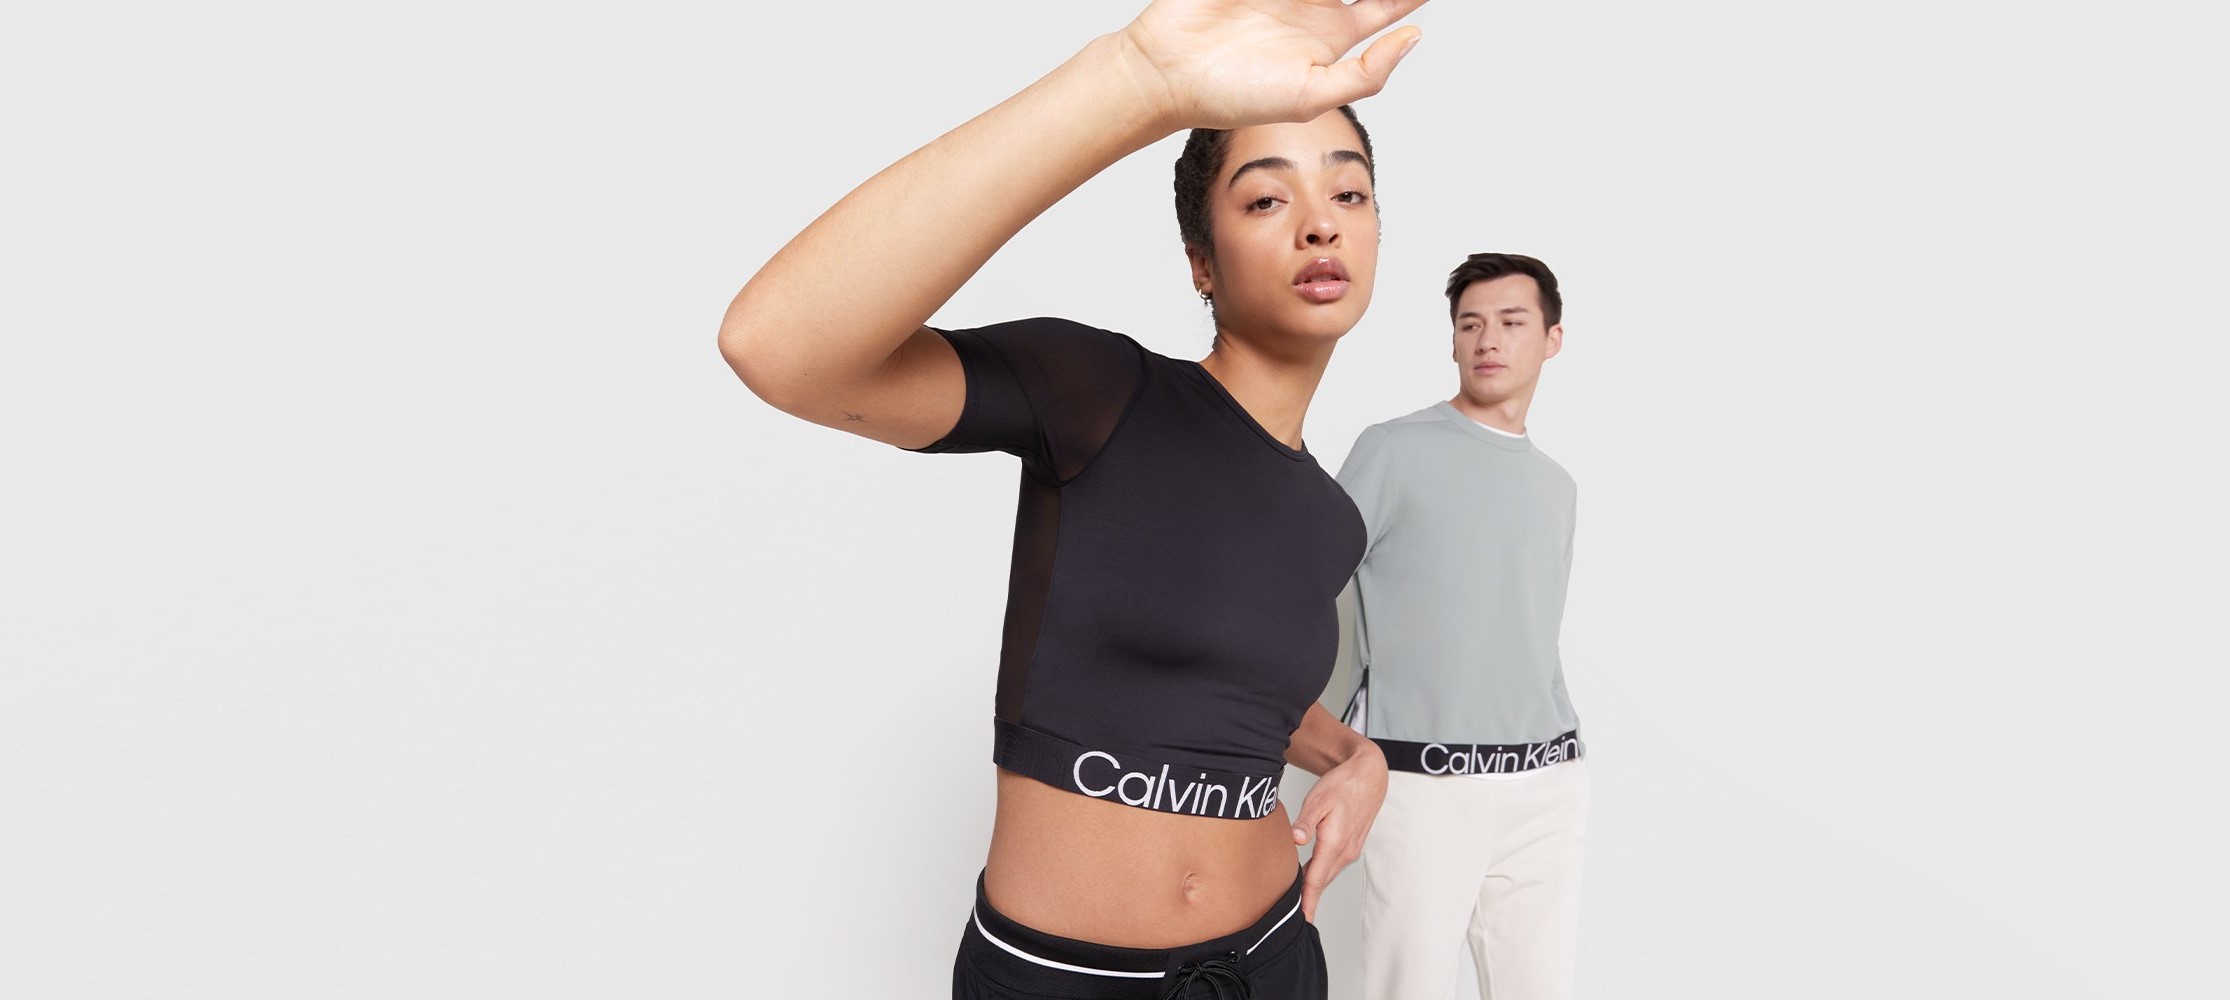 spin skarpt maksimere Calvin Klein outlet | Udsalg | Op til -75%* | Lounge by Zalando